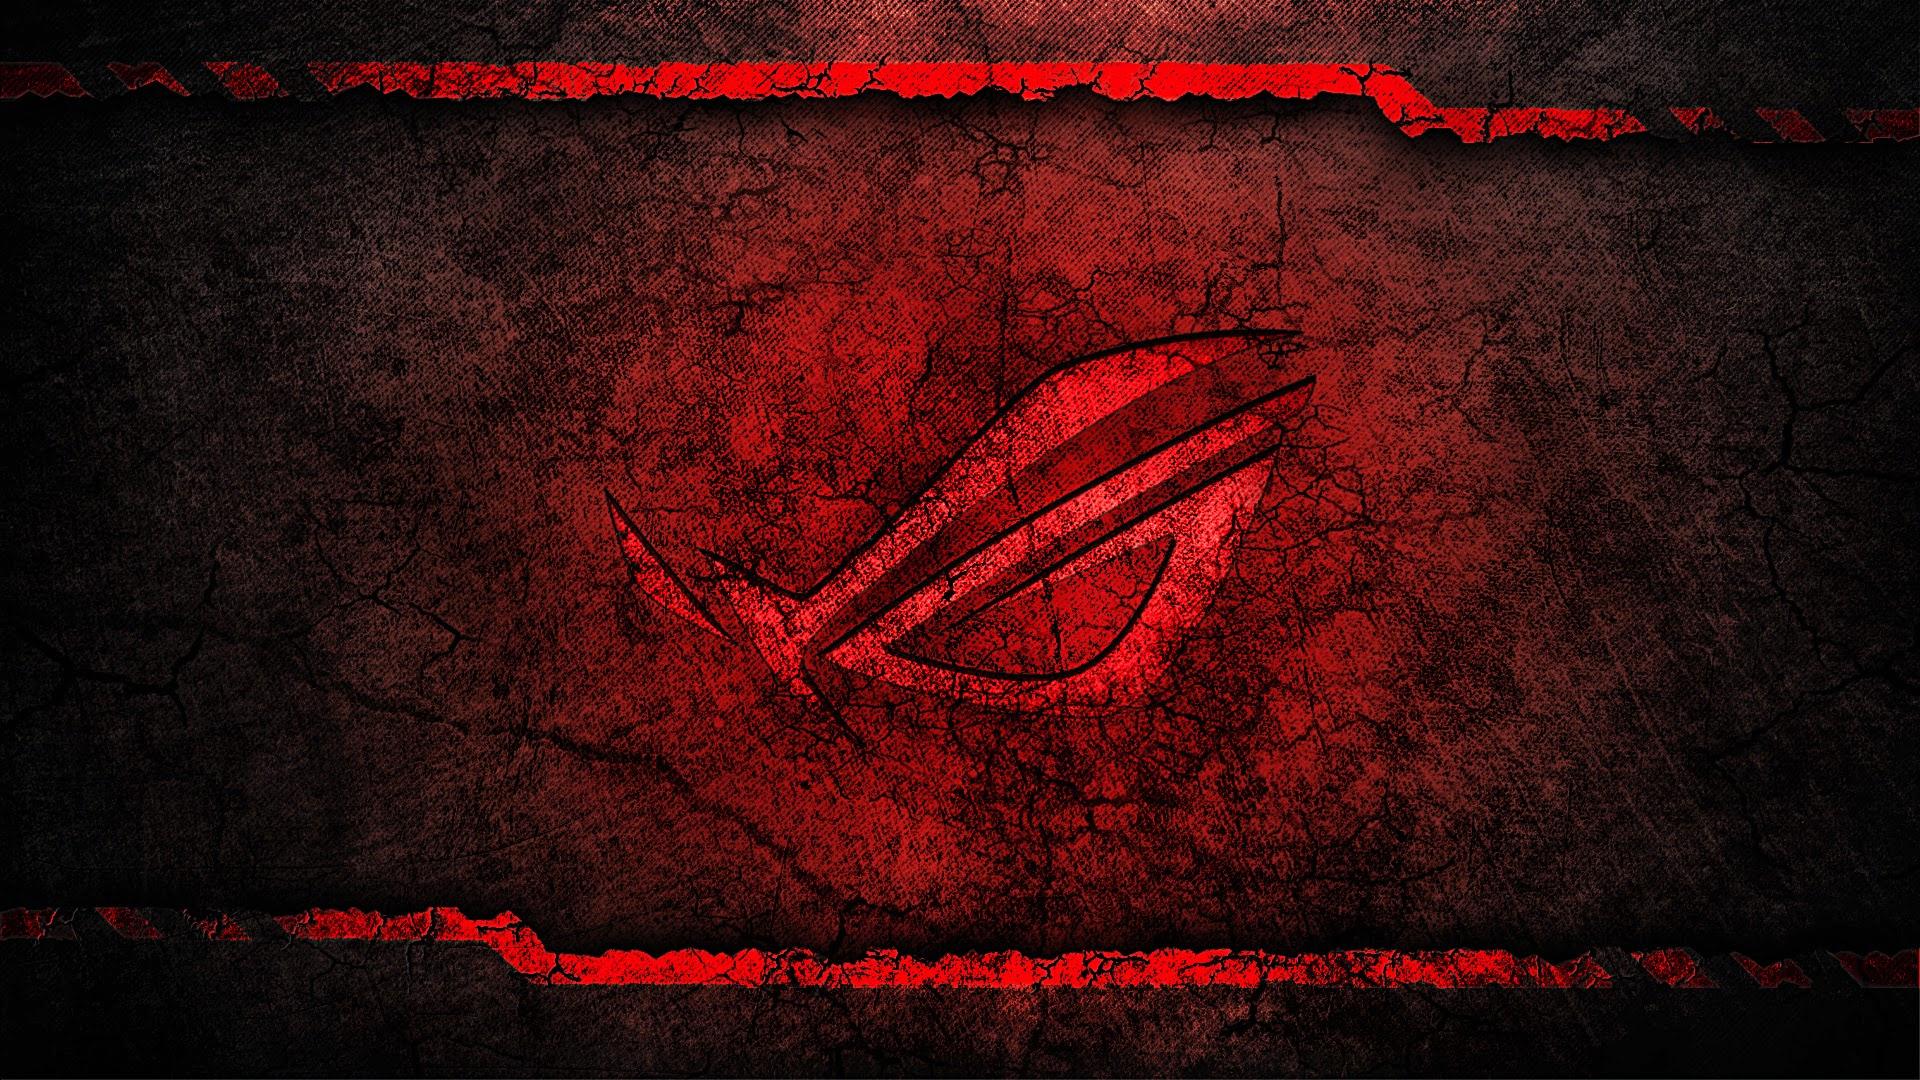 Asus Wallpaper - Republic Of Gamers Wallpaper Red - HD Wallpaper 